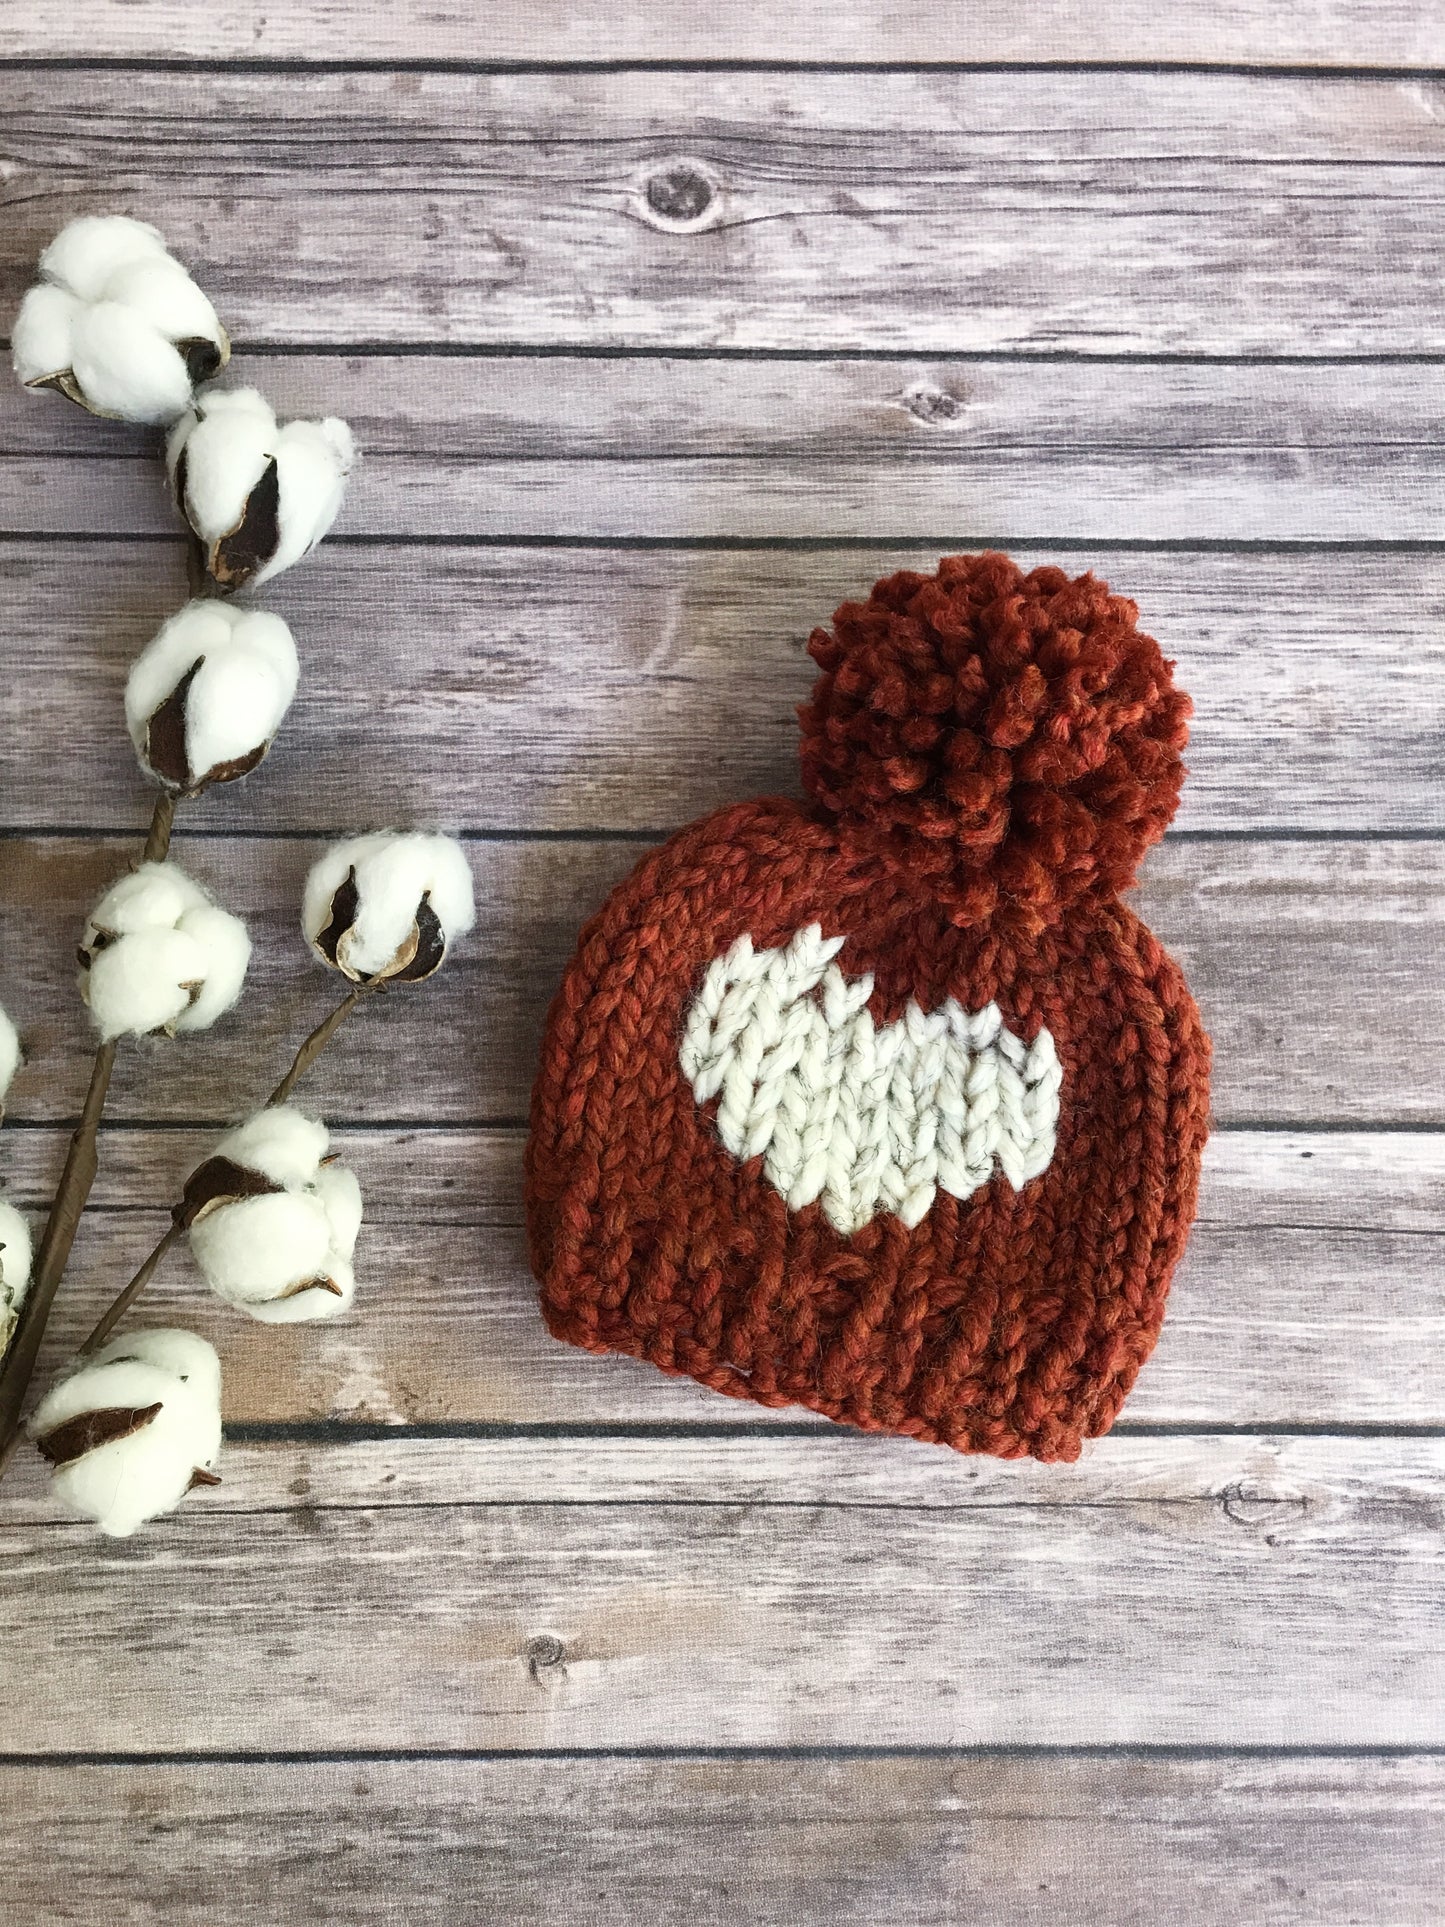 Big Heart Knit Baby Hat Beanie Handmade Yarn Pom Pom